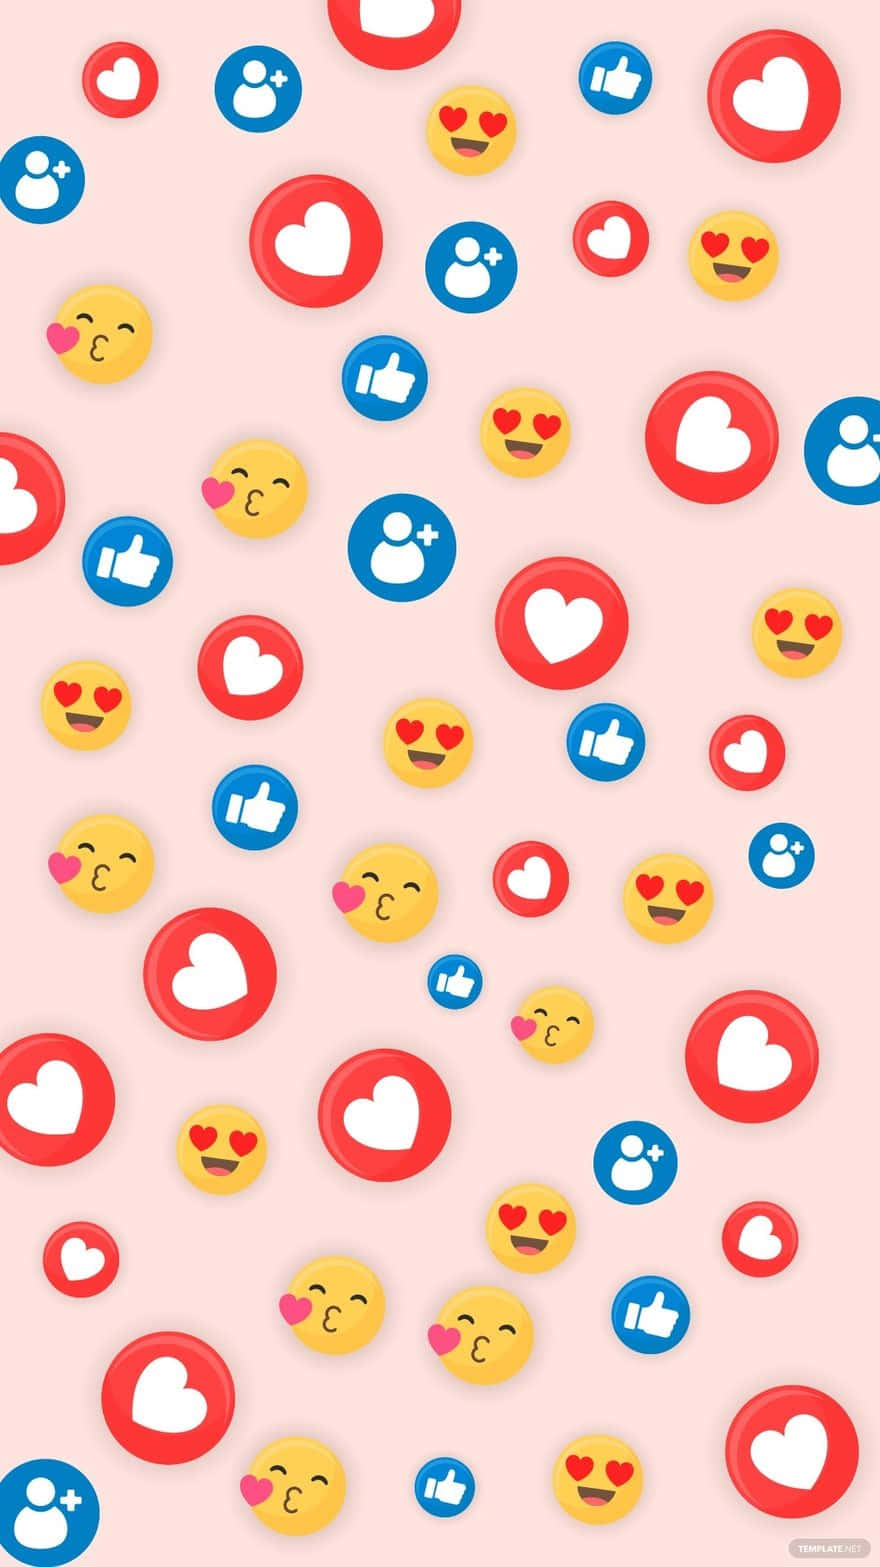 Social Media Reactions Pattern.jpg Wallpaper